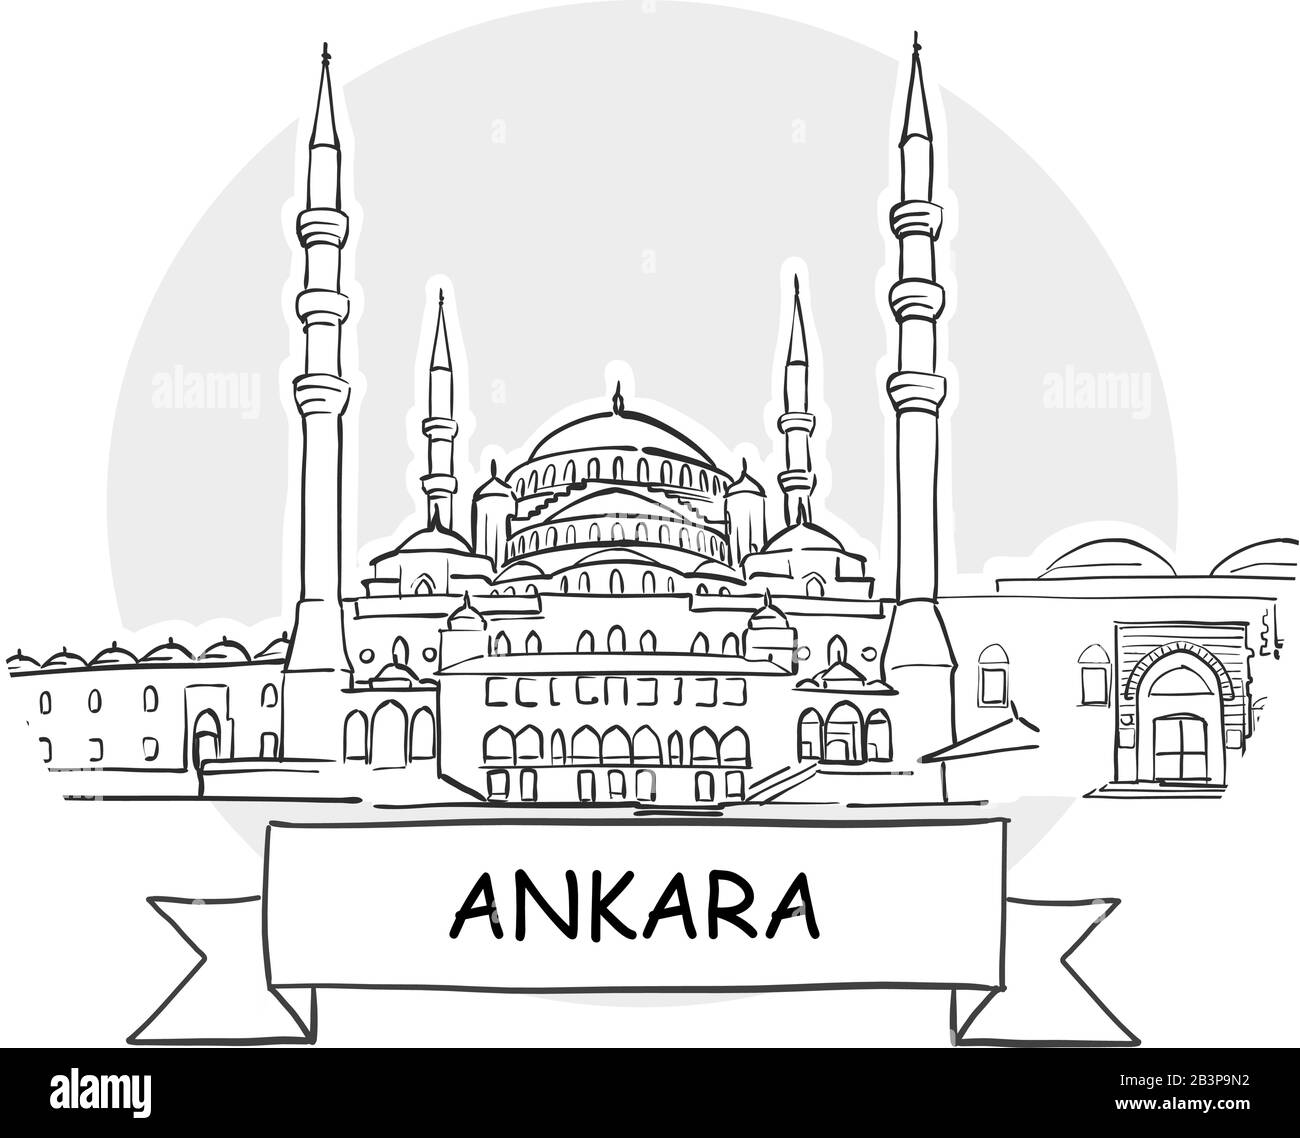 Panneau Vectoriel Ankara Cityscape. Illustration d'un dessin au trait avec ruban et titre. Illustration de Vecteur